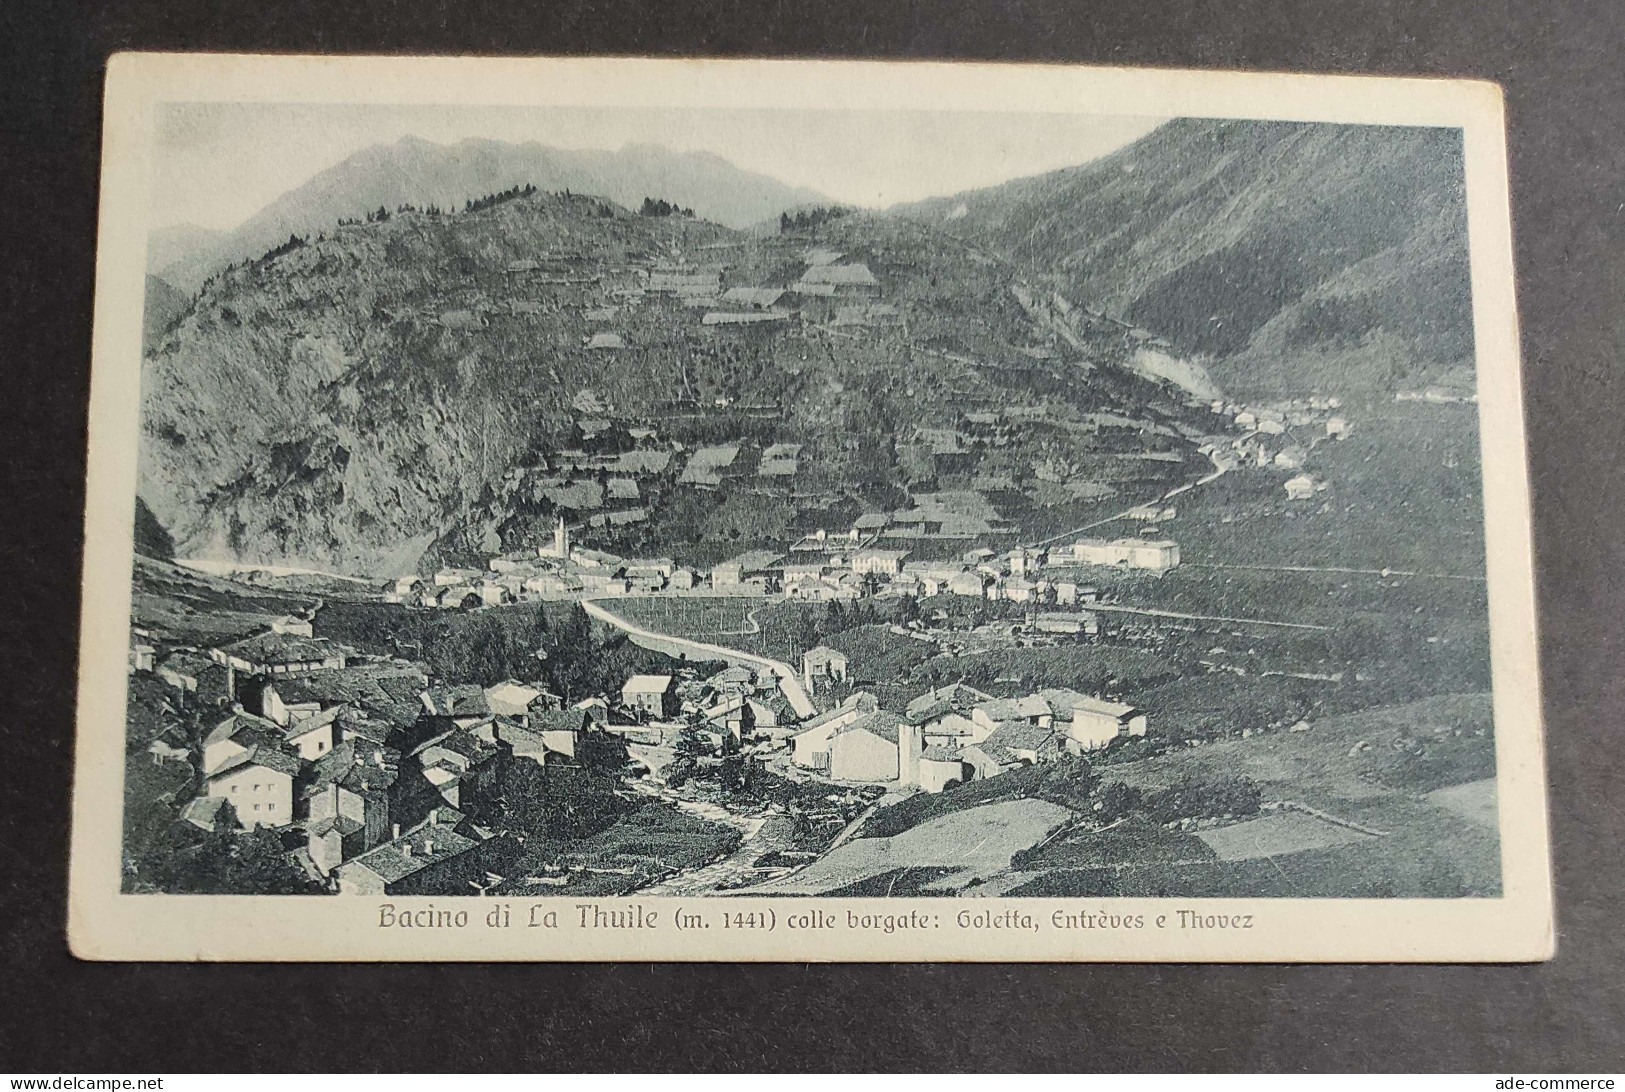 Cartolina Bacino Di La Thuile Con Le Borgate: Goletta, Entrèves E Thovez                                                - Aosta